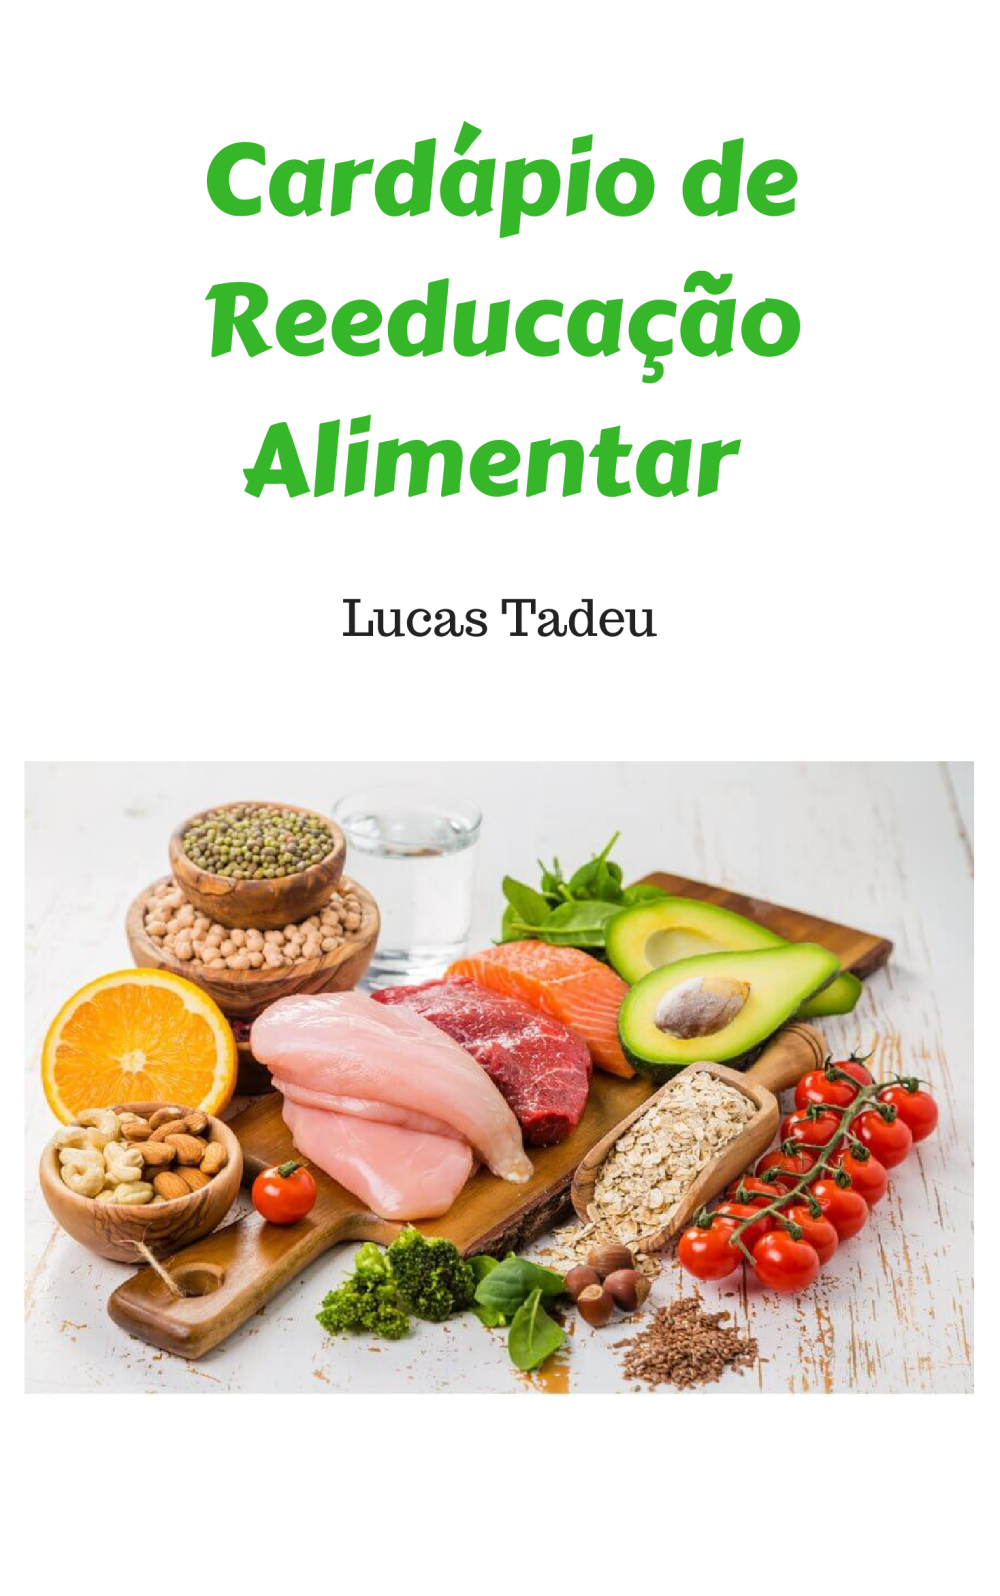 Cardapio de reeducaão alimentar 2021 - Baixar pdf de Doceru.com - reeducação alimentar cardápio simples e barato